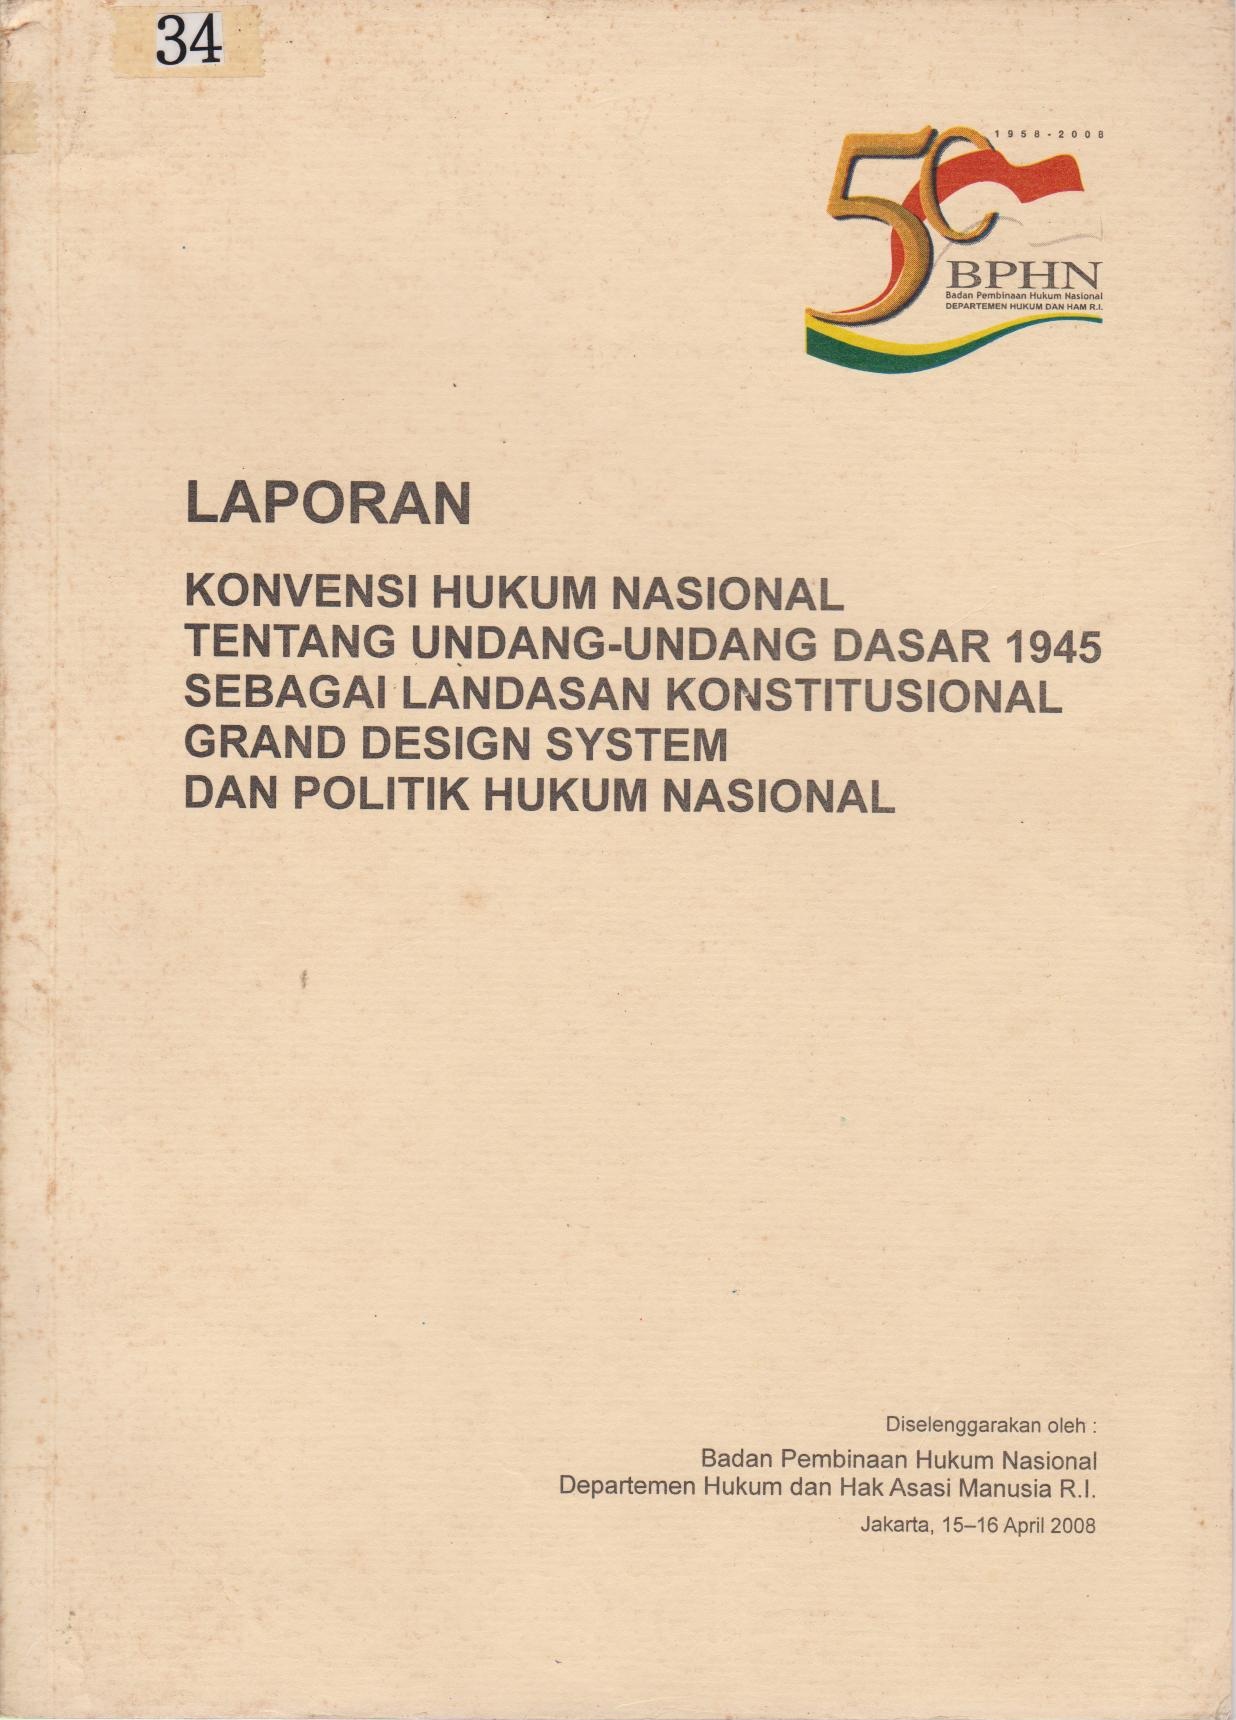 Laporan Konvensi Hukum Nasional Tentang Undang - Undang Dasar 1945 Sebagai Landasan Konstitusional Grand Design System Dan Politik Hukum Nasional